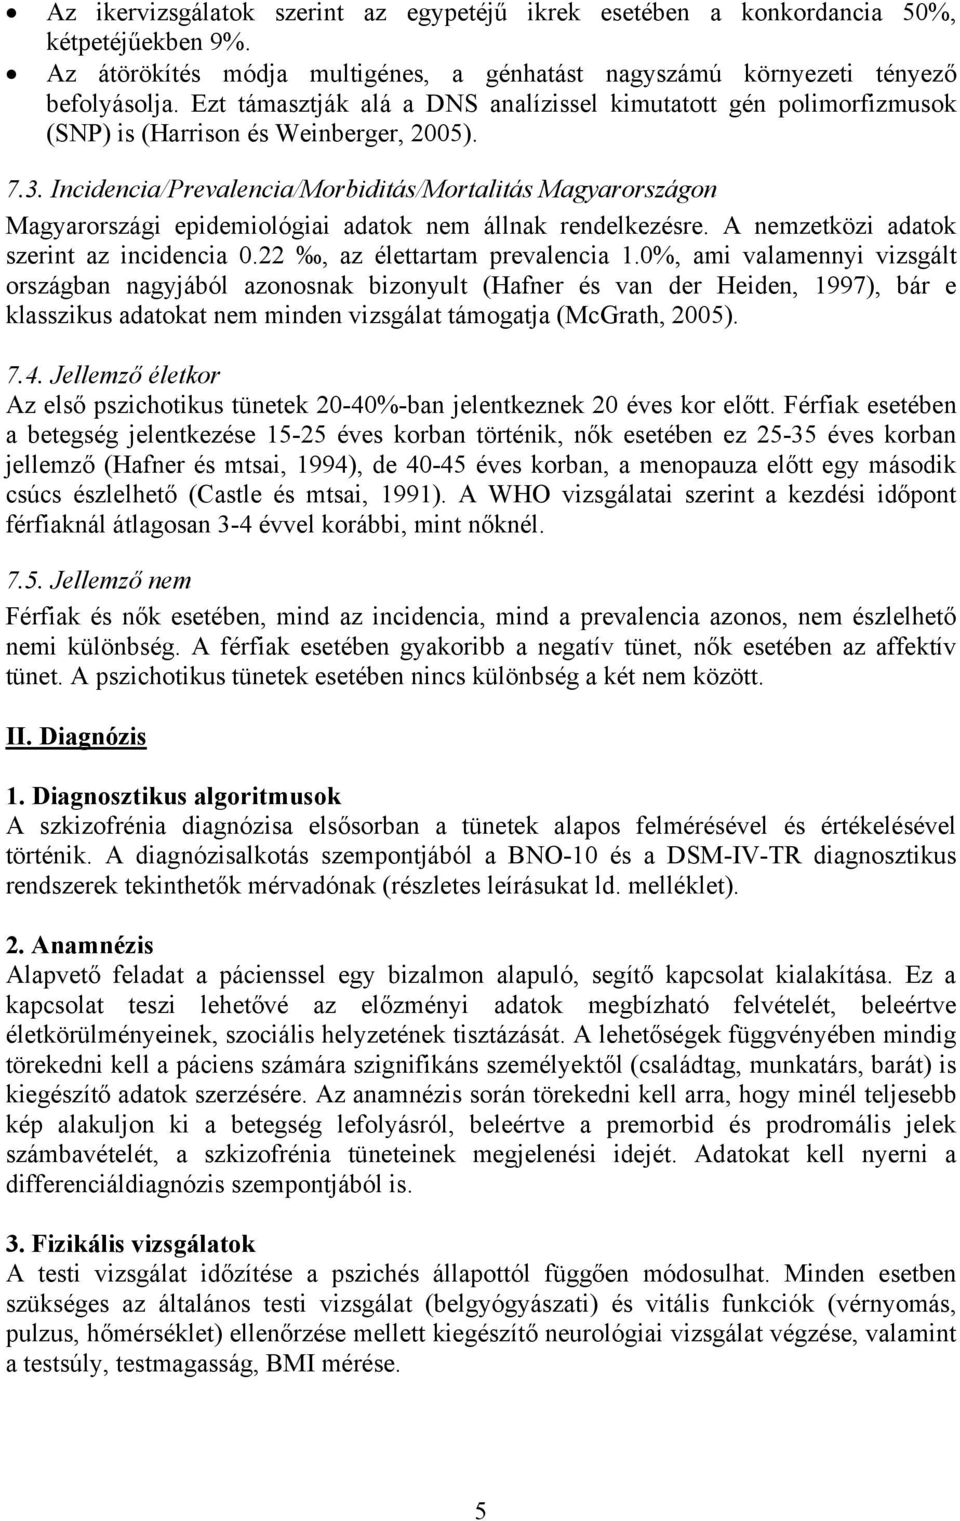 Incidencia/Prevalencia/Morbiditás/Mortalitás Magyarországon Magyarországi epidemiológiai adatok nem állnak rendelkezésre. A nemzetközi adatok szerint az incidencia 0.22, az élettartam prevalencia 1.